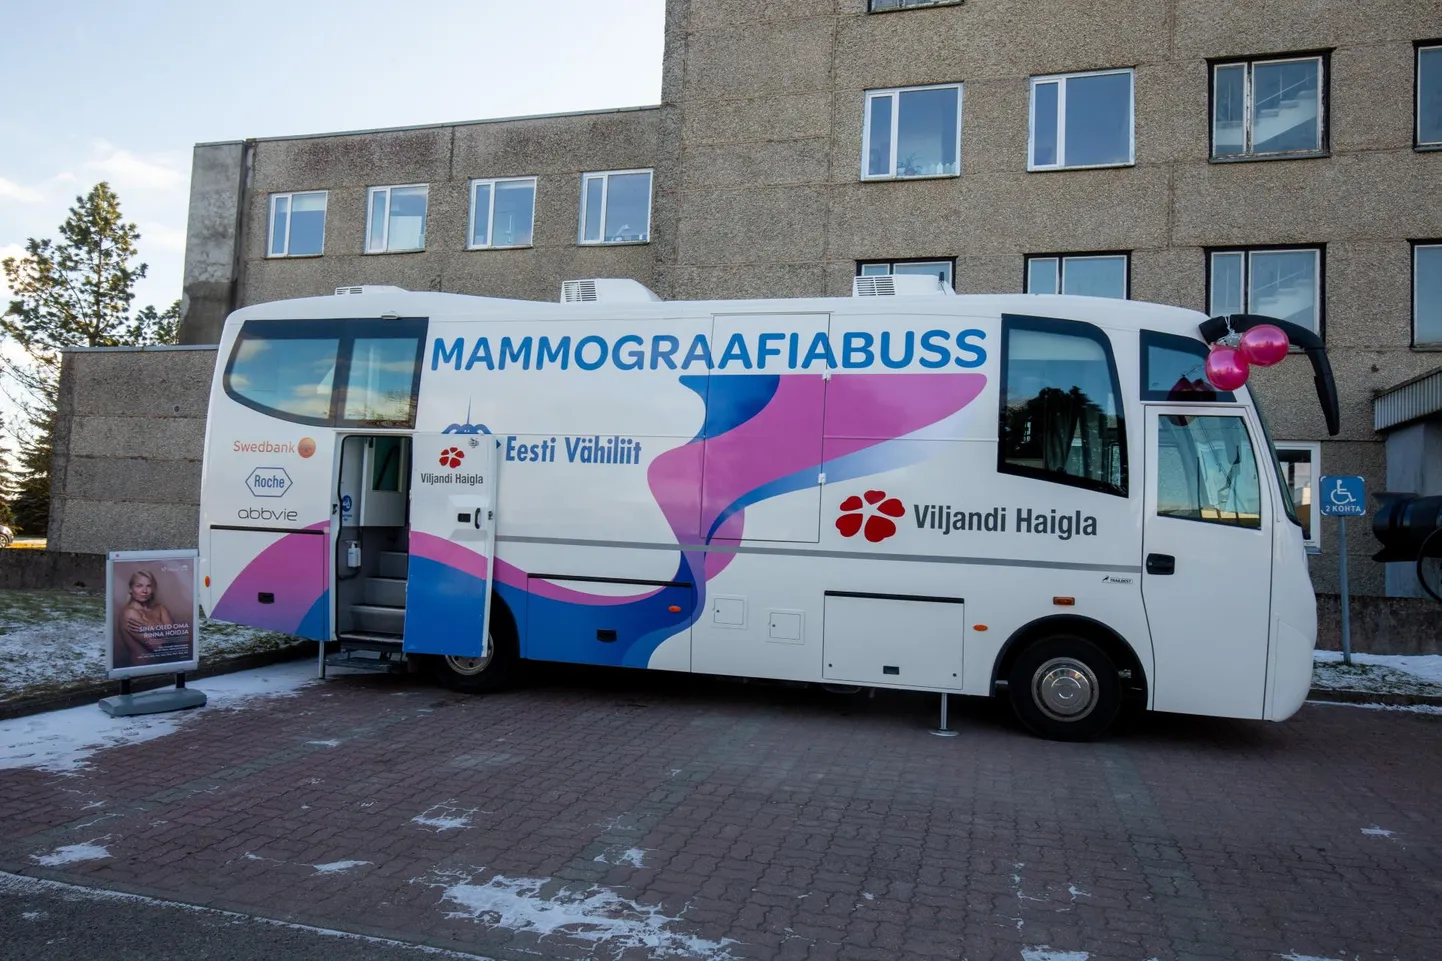 Reedel sai Viljandi haigla enda kasutusse mammograafiabussi, millega hakkab uuringuid tegema nii kodumaakonnas kui ka mujal.